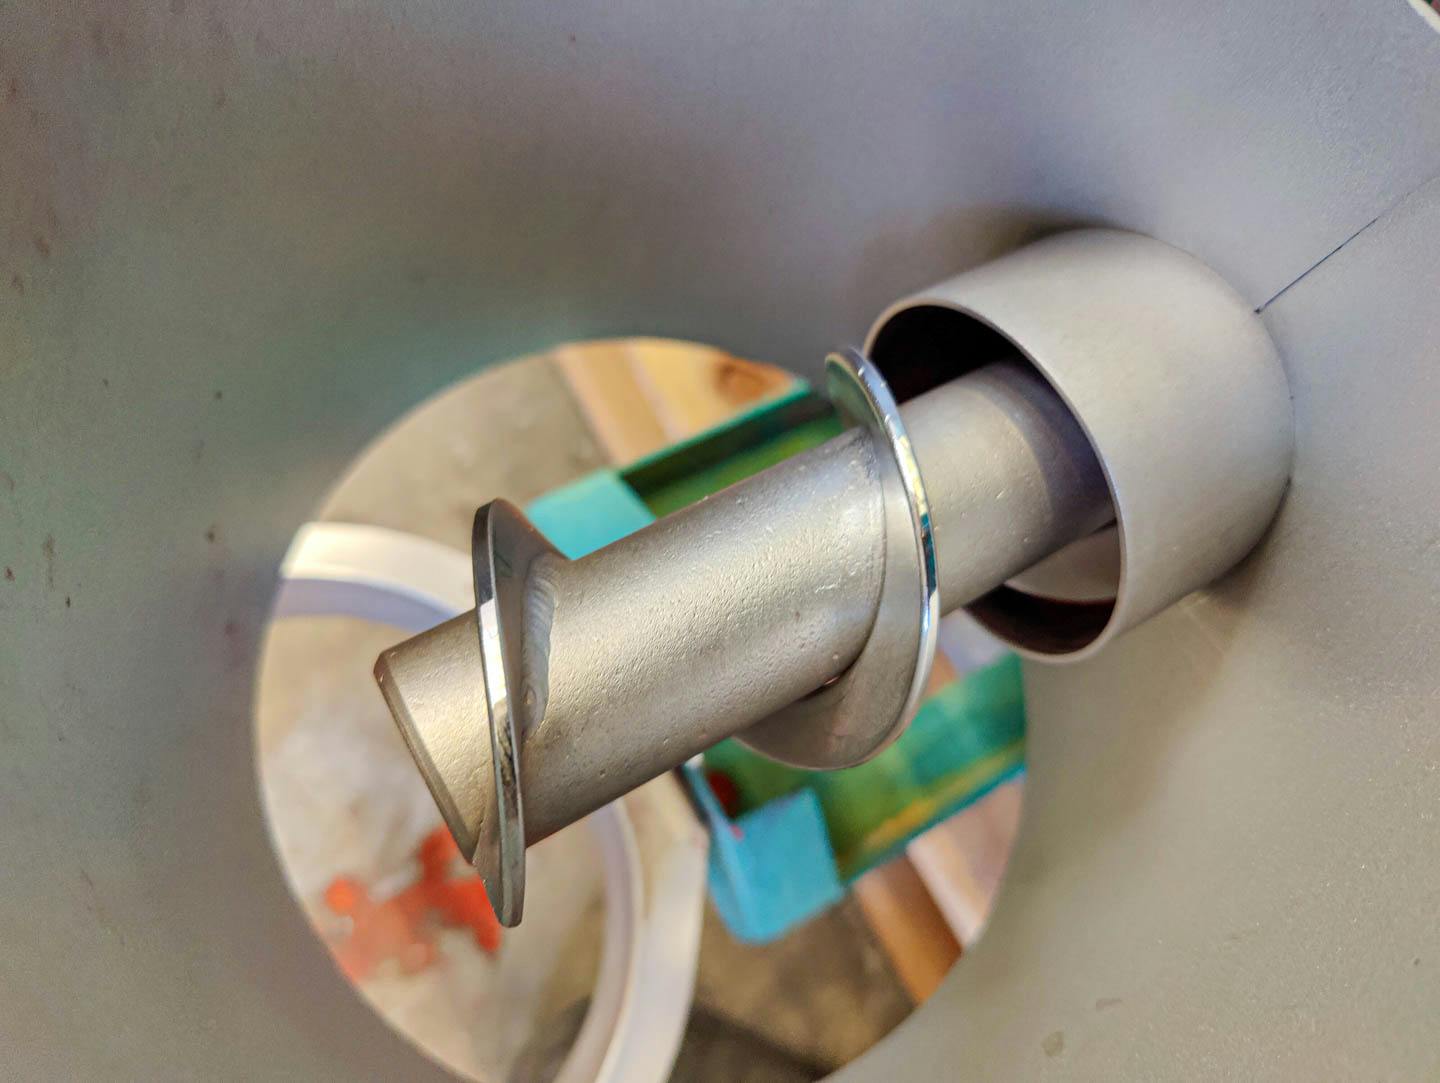 Schenck - Metering screw - image 7